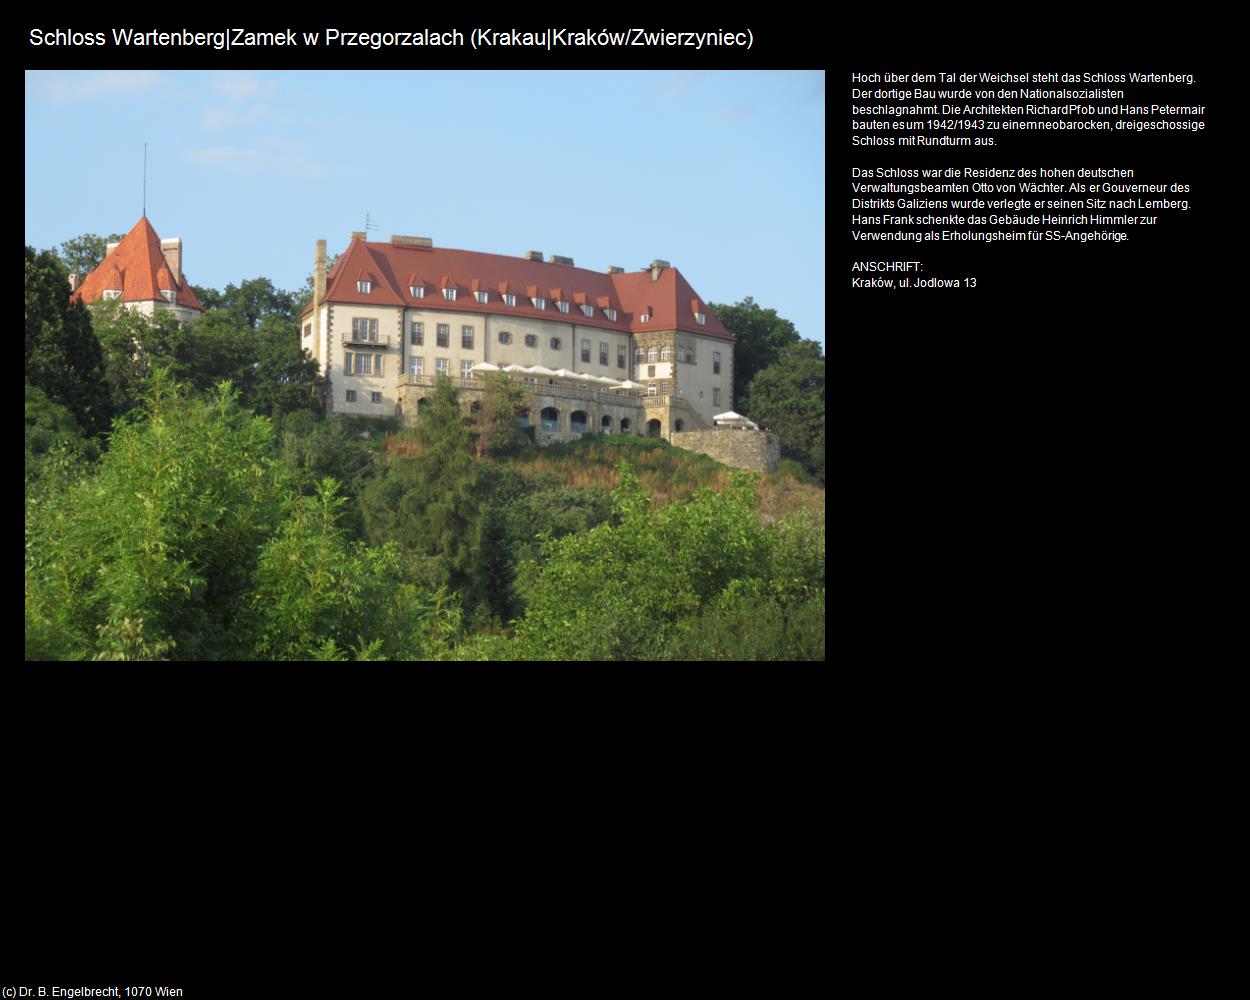 Schloss Wartenberg|Zamek w Przegorzalach (Zwierzyniec) (Krakau|Krakow) in POLEN-Galizien